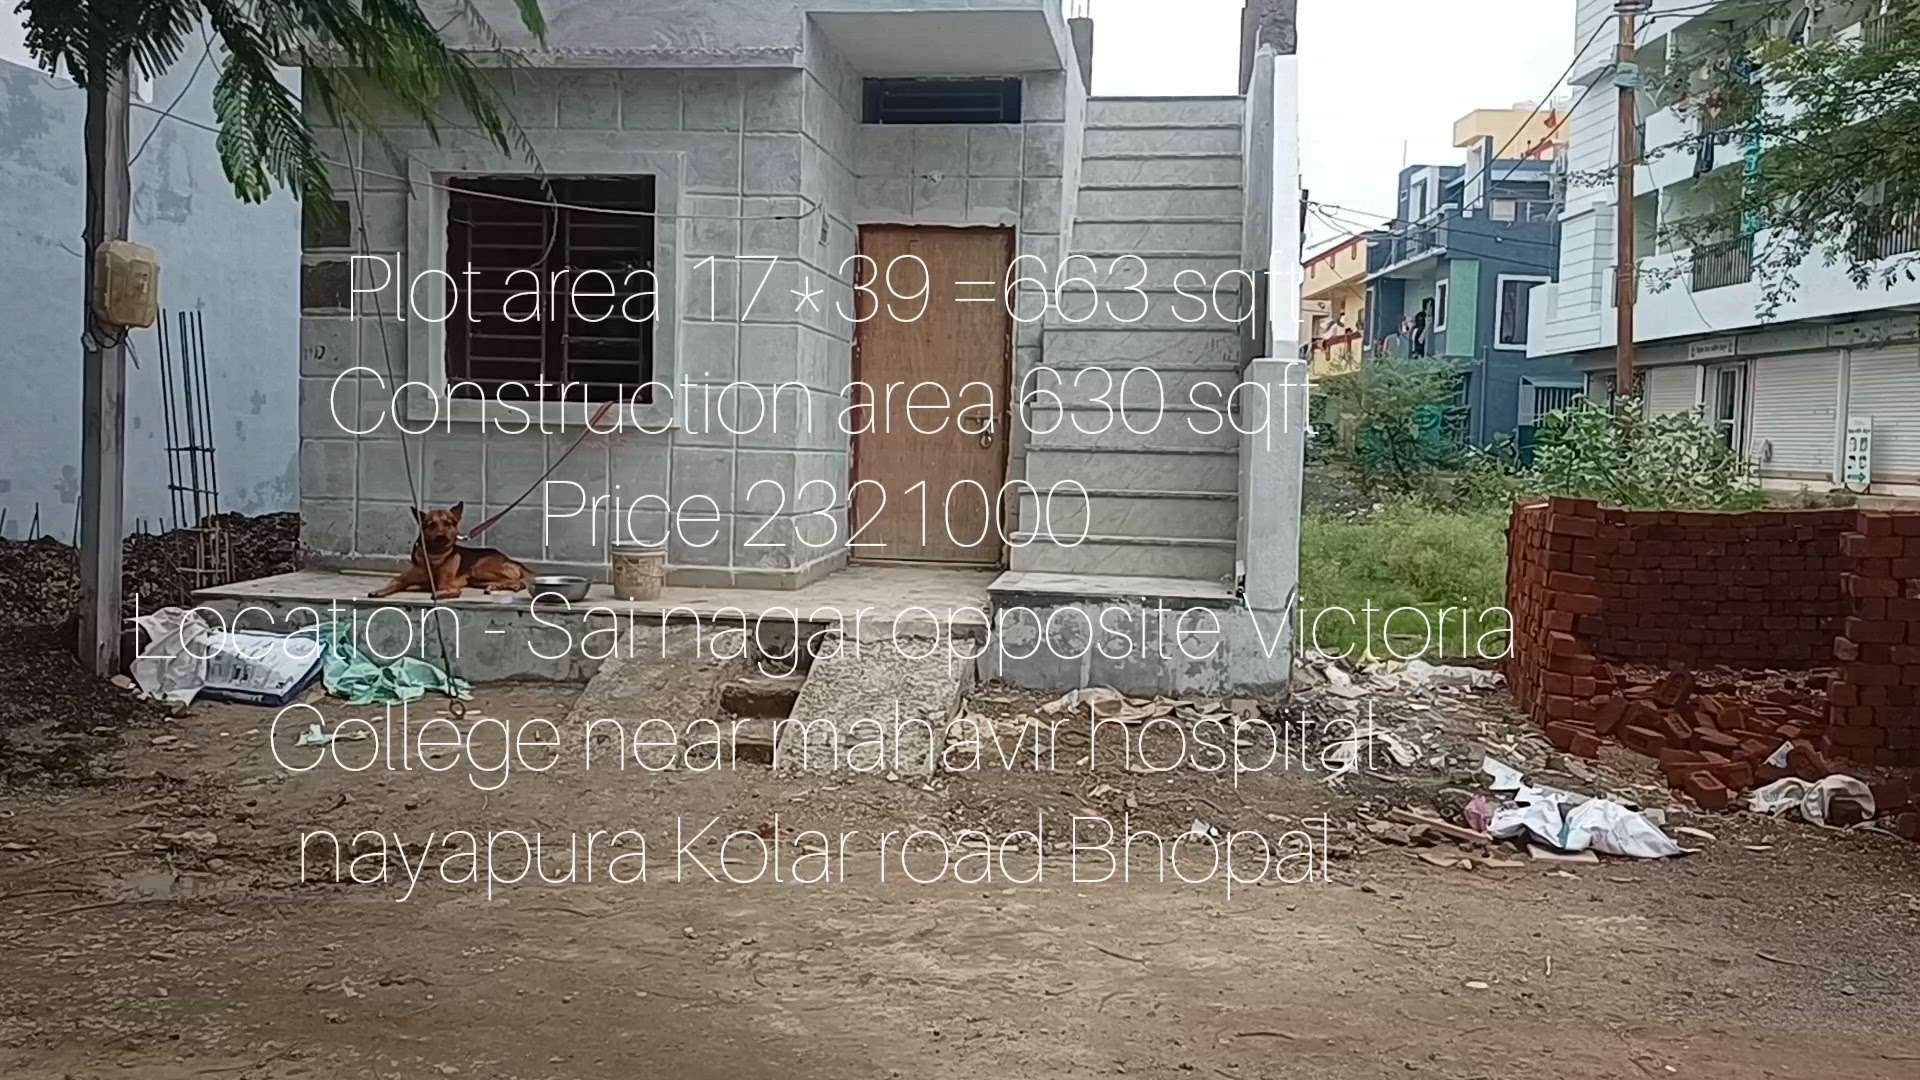 #17*39-2BHKhouseplane #budgethouseinBhopal #propertyinKolarRoad #budgetproperty #highclassconstruction